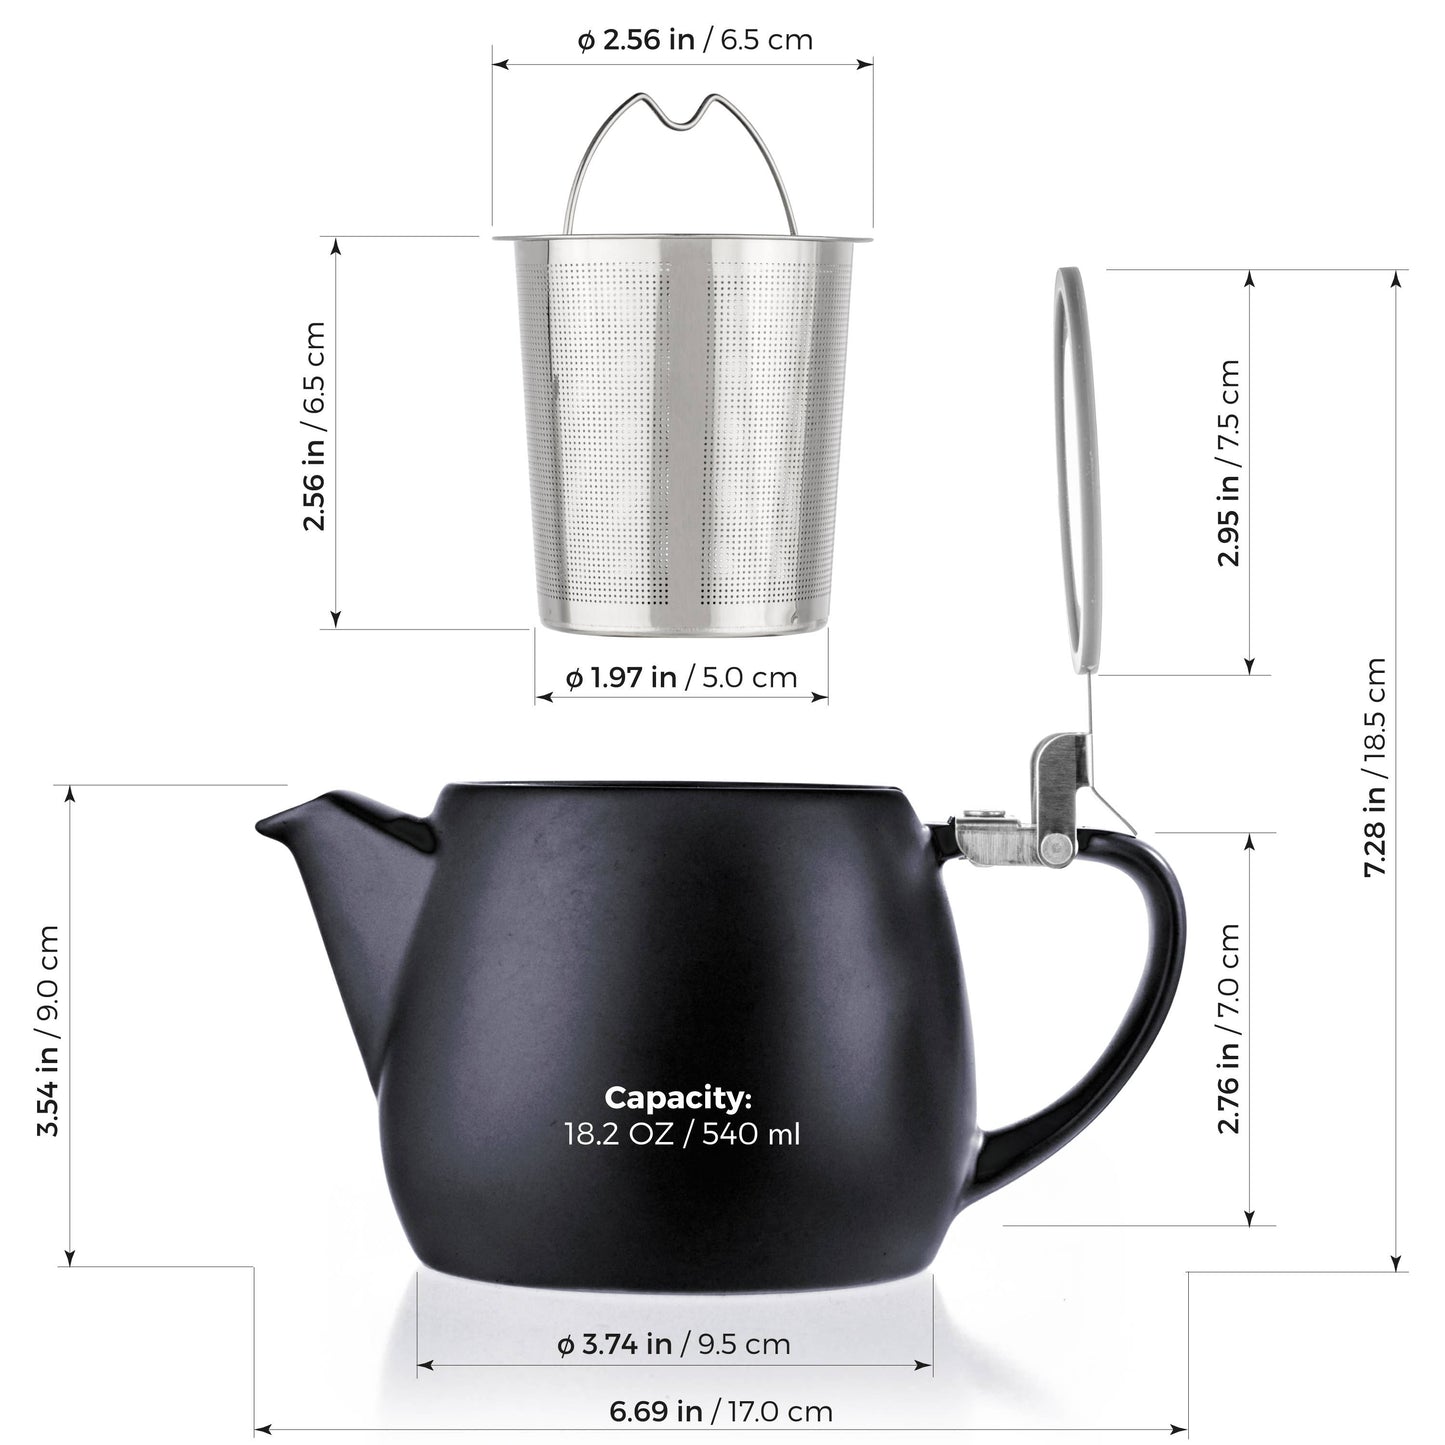 Black Porcelain Teapot Infuser 18.2 oz.